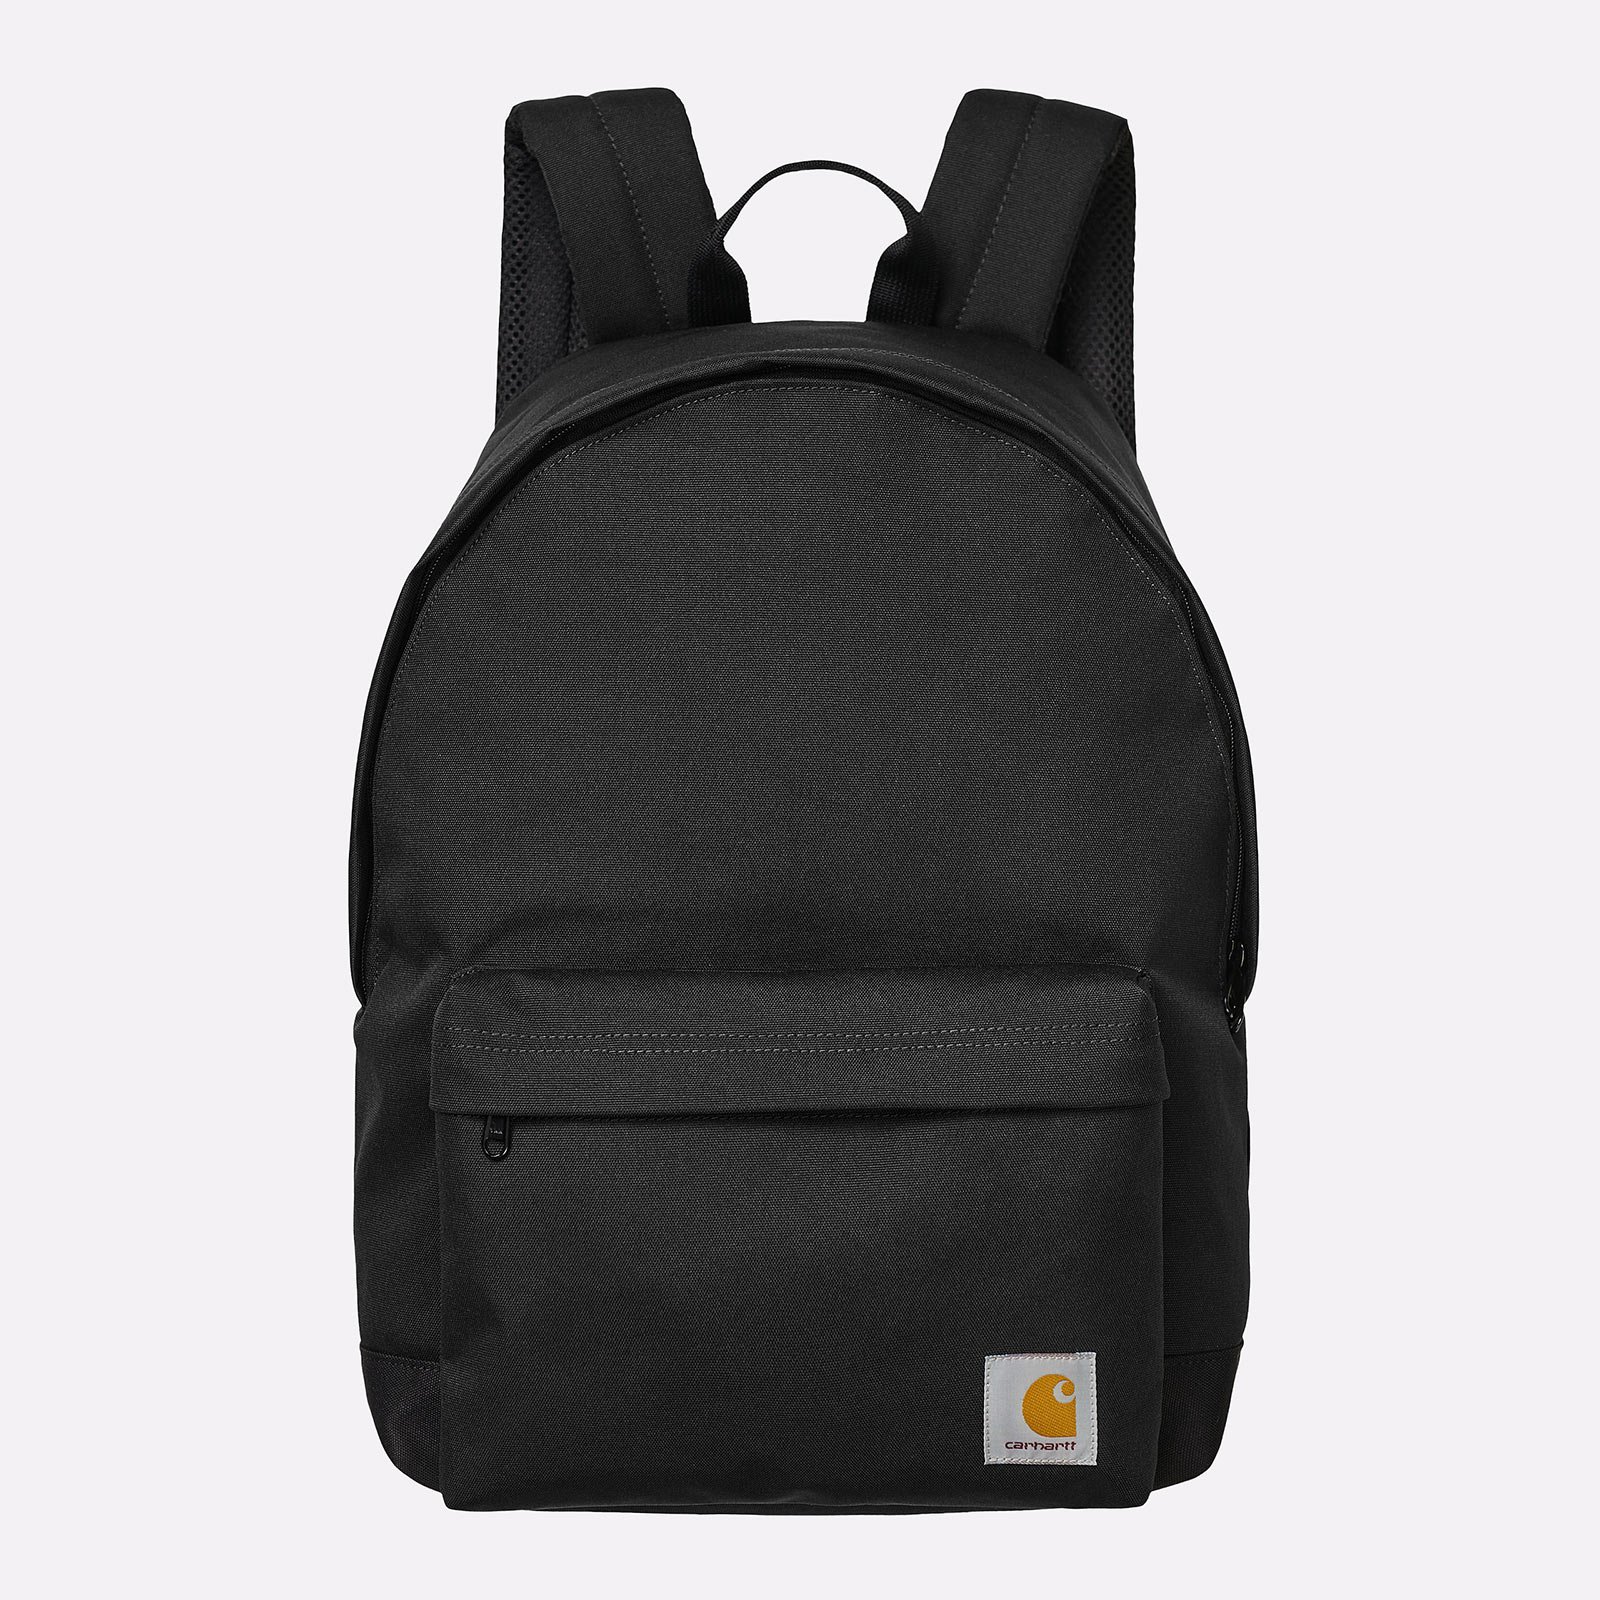  черный рюкзак Carhartt WIP Jake Backpack I031581-black - цена, описание, фото 1